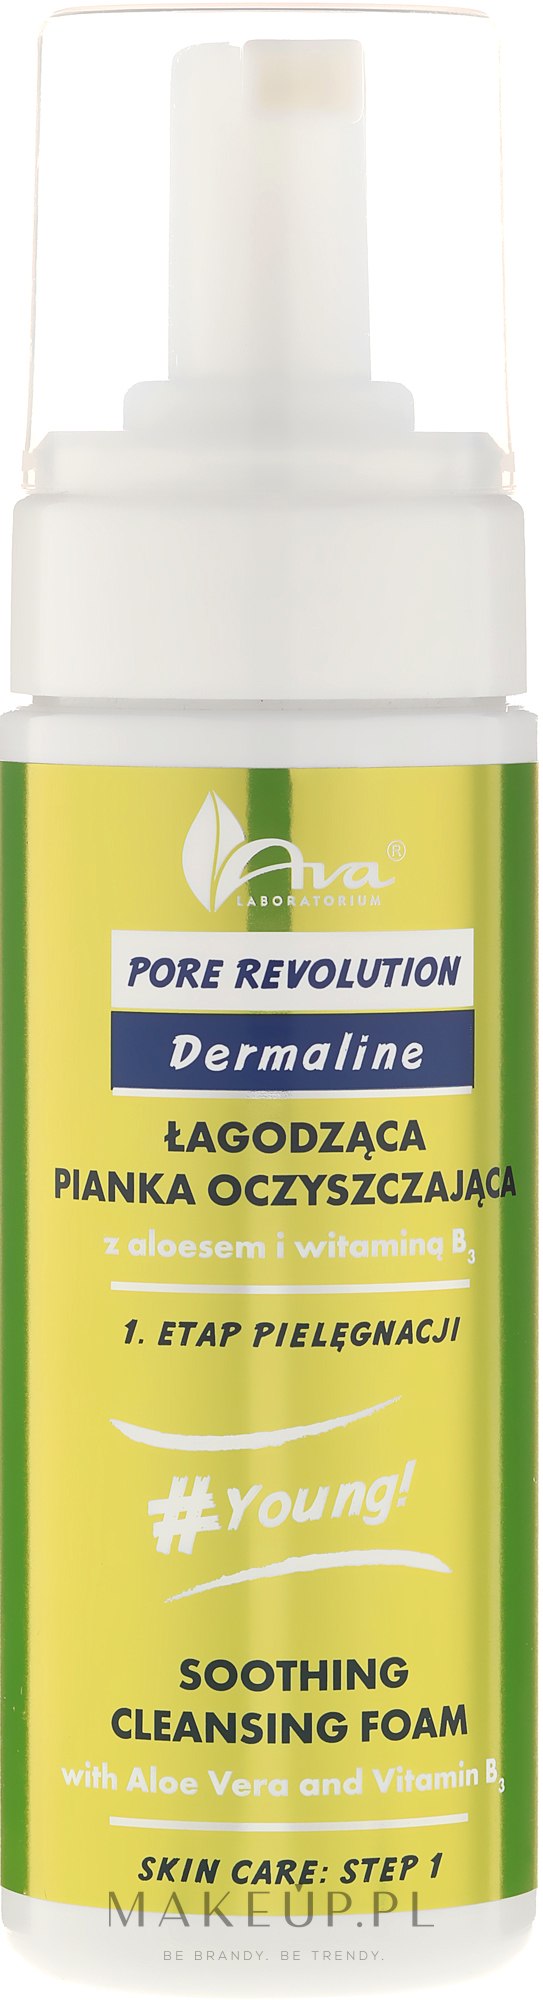 Łagodząca pianka oczyszczająca z aloesem i witaminą B3 - AVA Laboratorium Pore Revolution Dermoprogram — Zdjęcie 150 ml